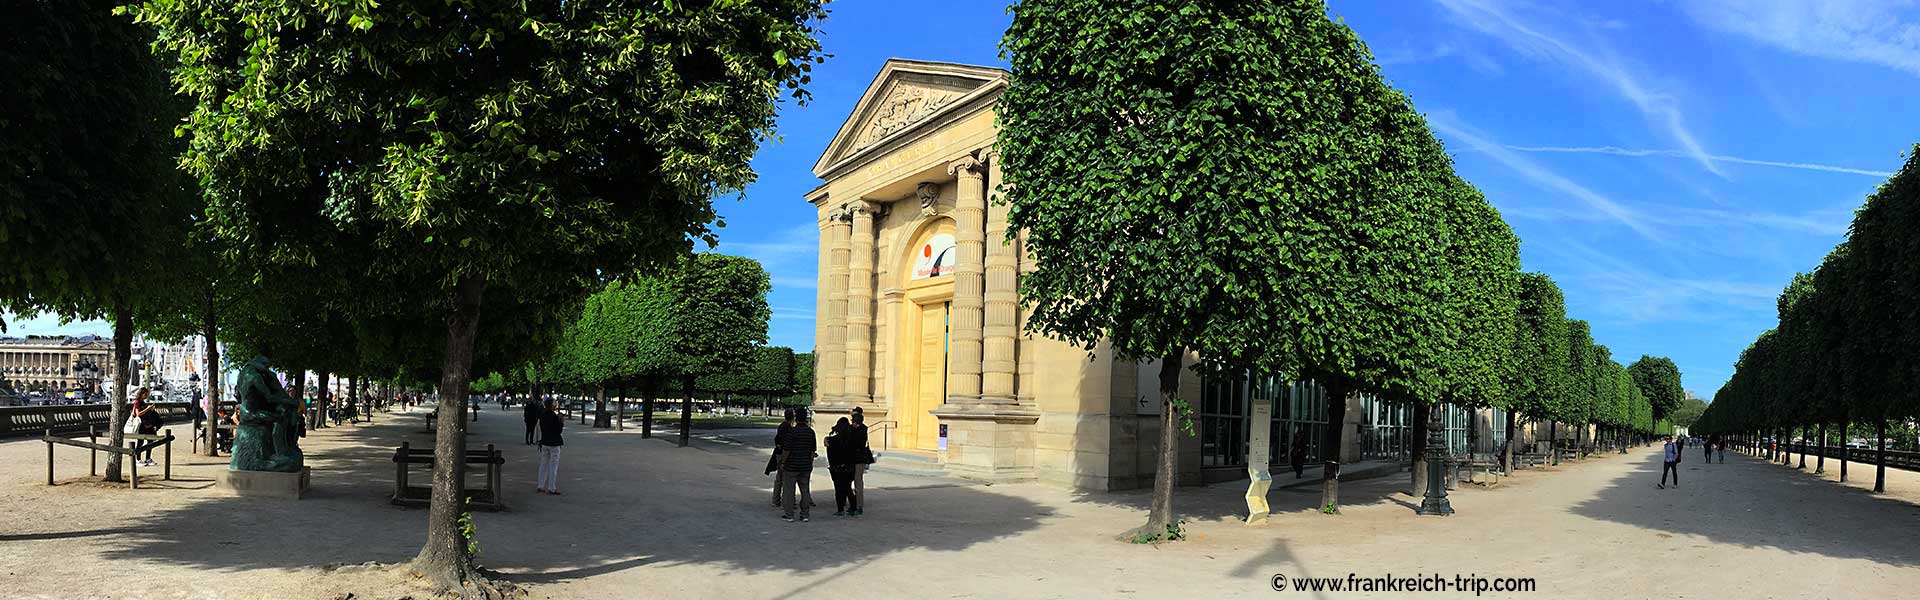 Orangerie Museum Paris